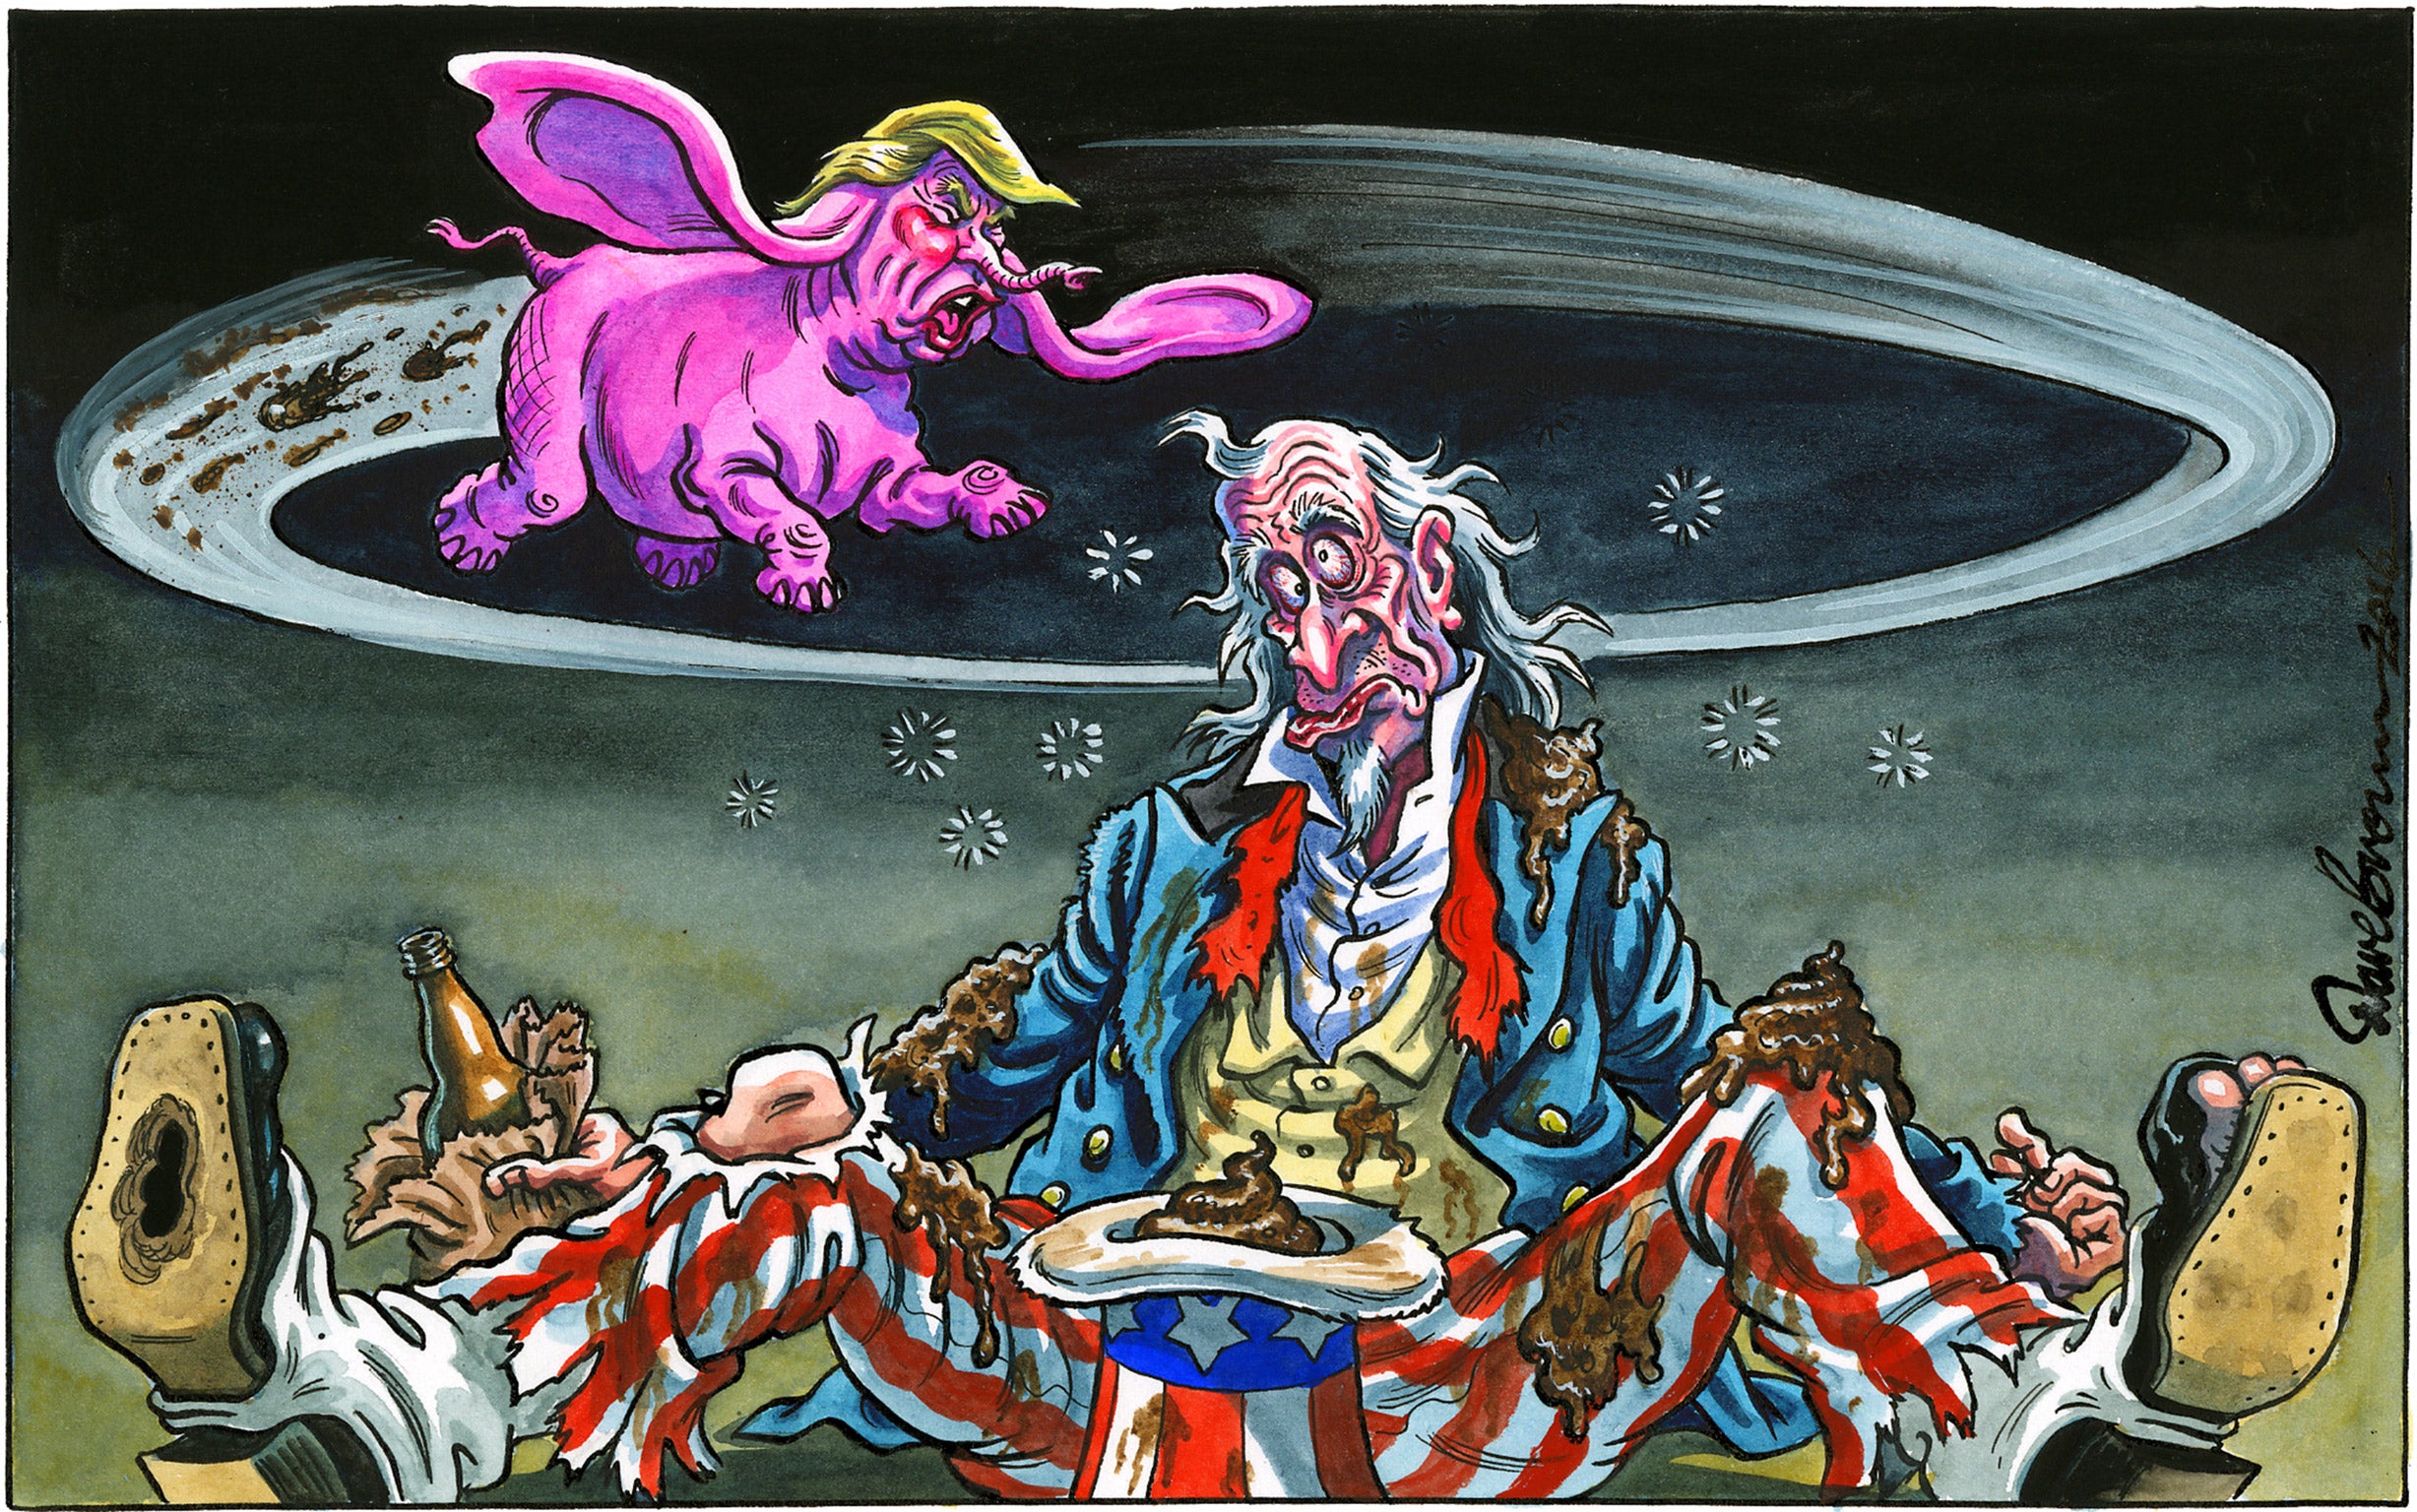  Американские выборы в карикатуре 